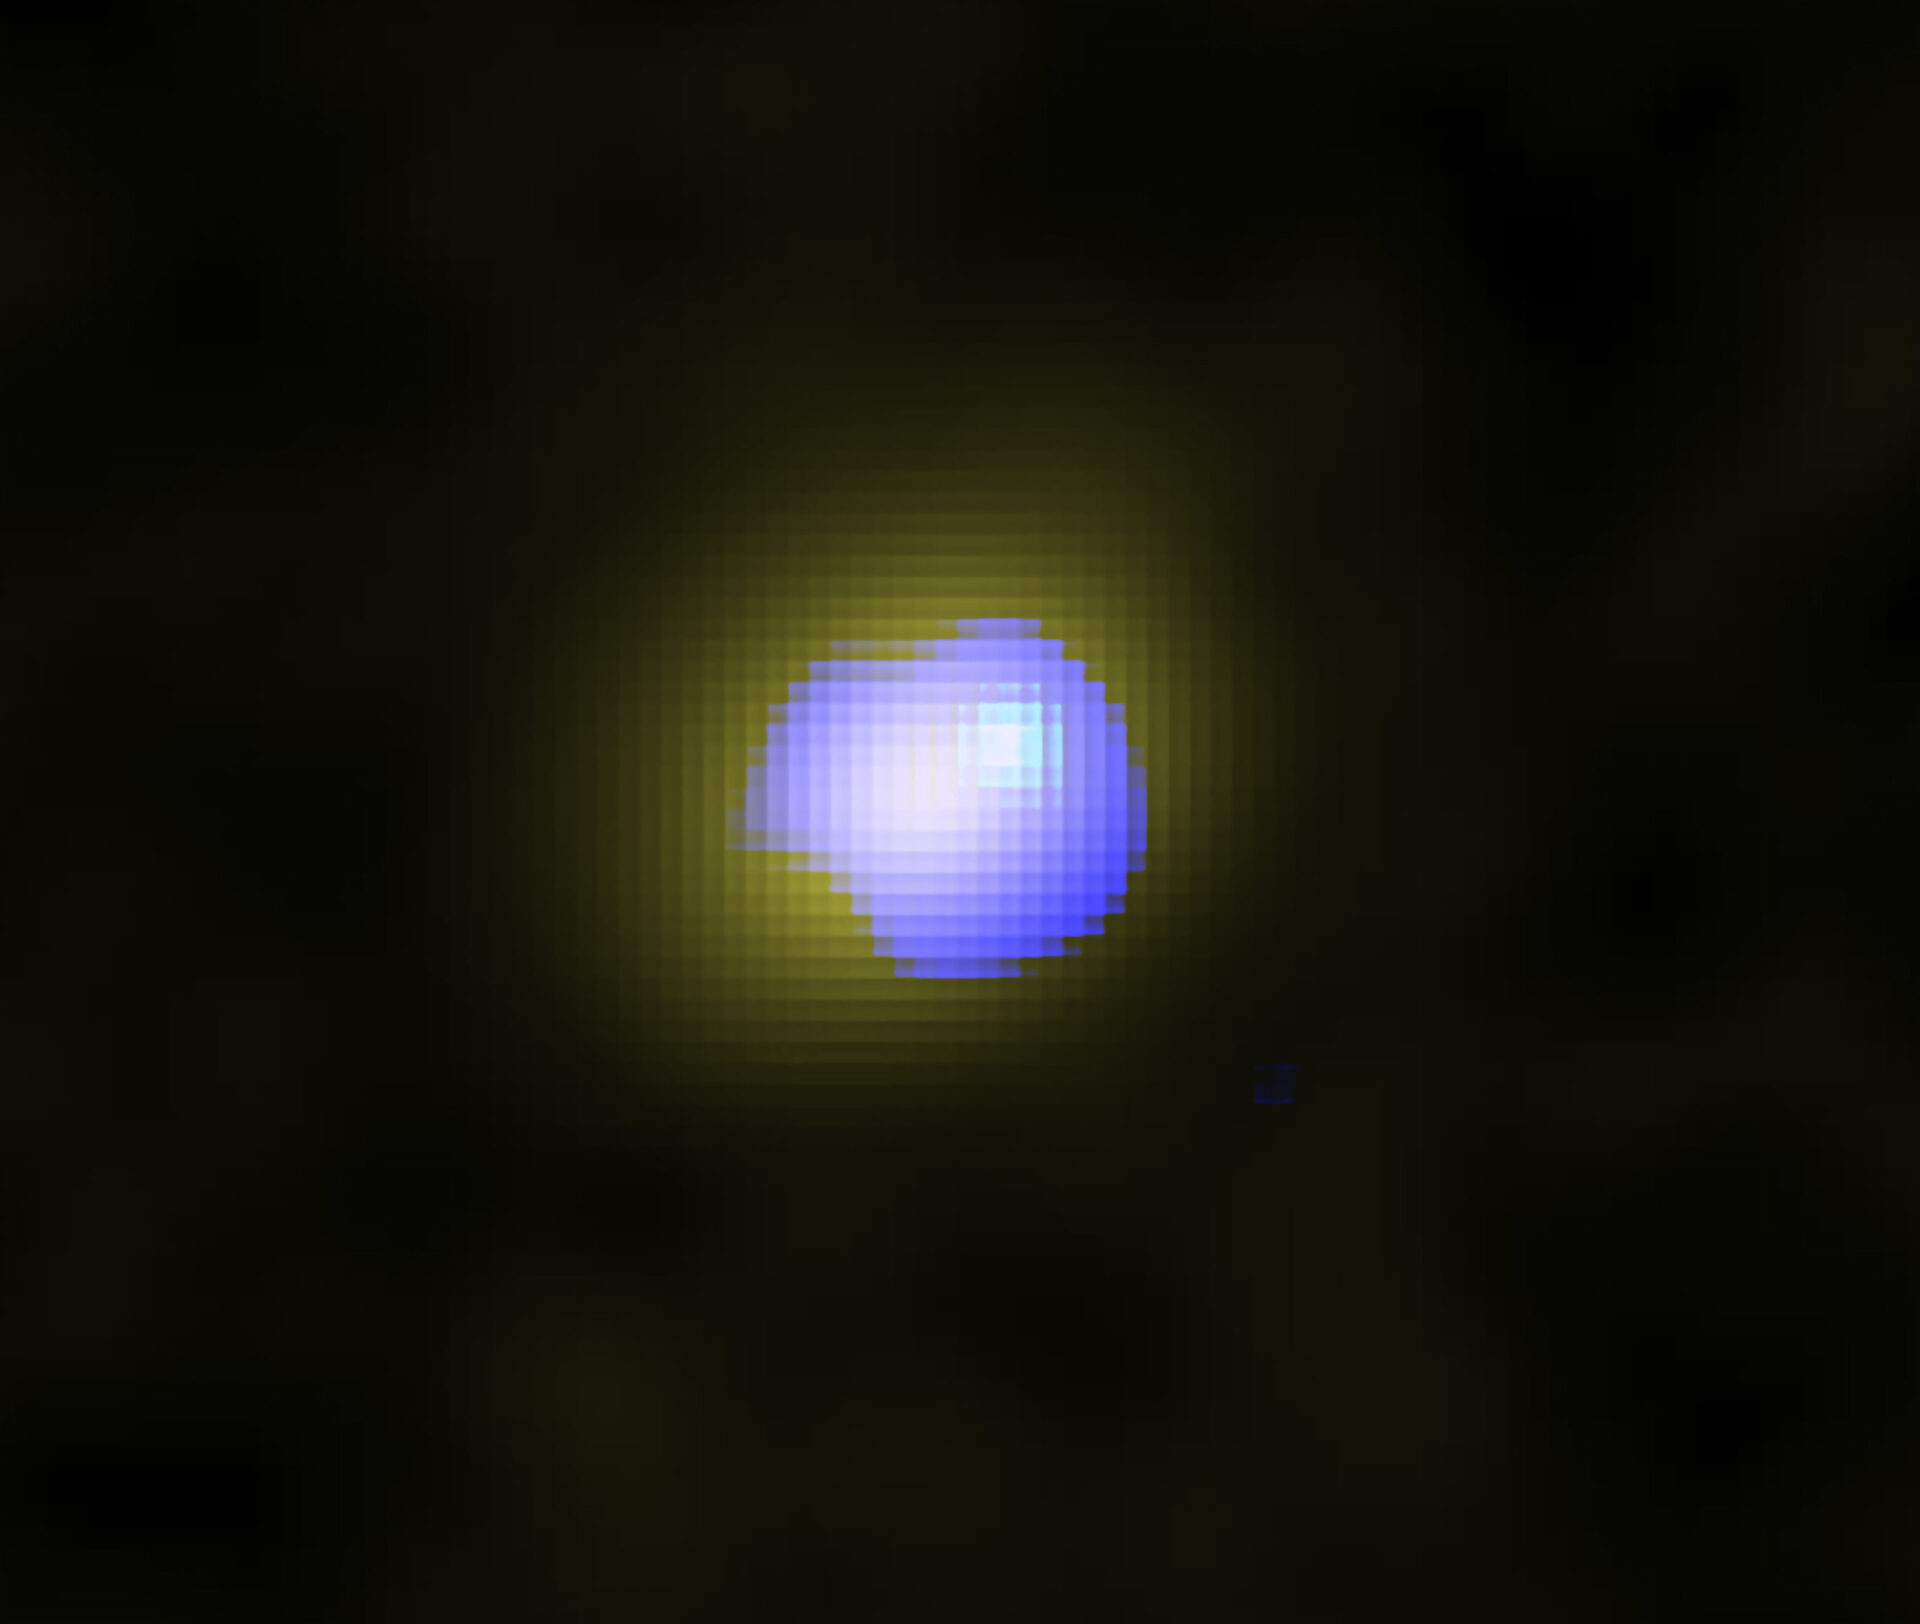 Imagen de ALMA de la galaxia distante J1243 + 0100 que alberga un agujero negro supermasivo en su centro. La distribución del gas silencioso en la galaxia se muestra en amarillo y la distribución del viento galáctico de alta velocidad se muestra en azul. El viento está ubicado en el centro de la galaxia, lo que indica que el agujero negro supermasivo impulsa el viento. Crédito: ALMA (ESO / NAOJ / NRAO), Izumi et al.